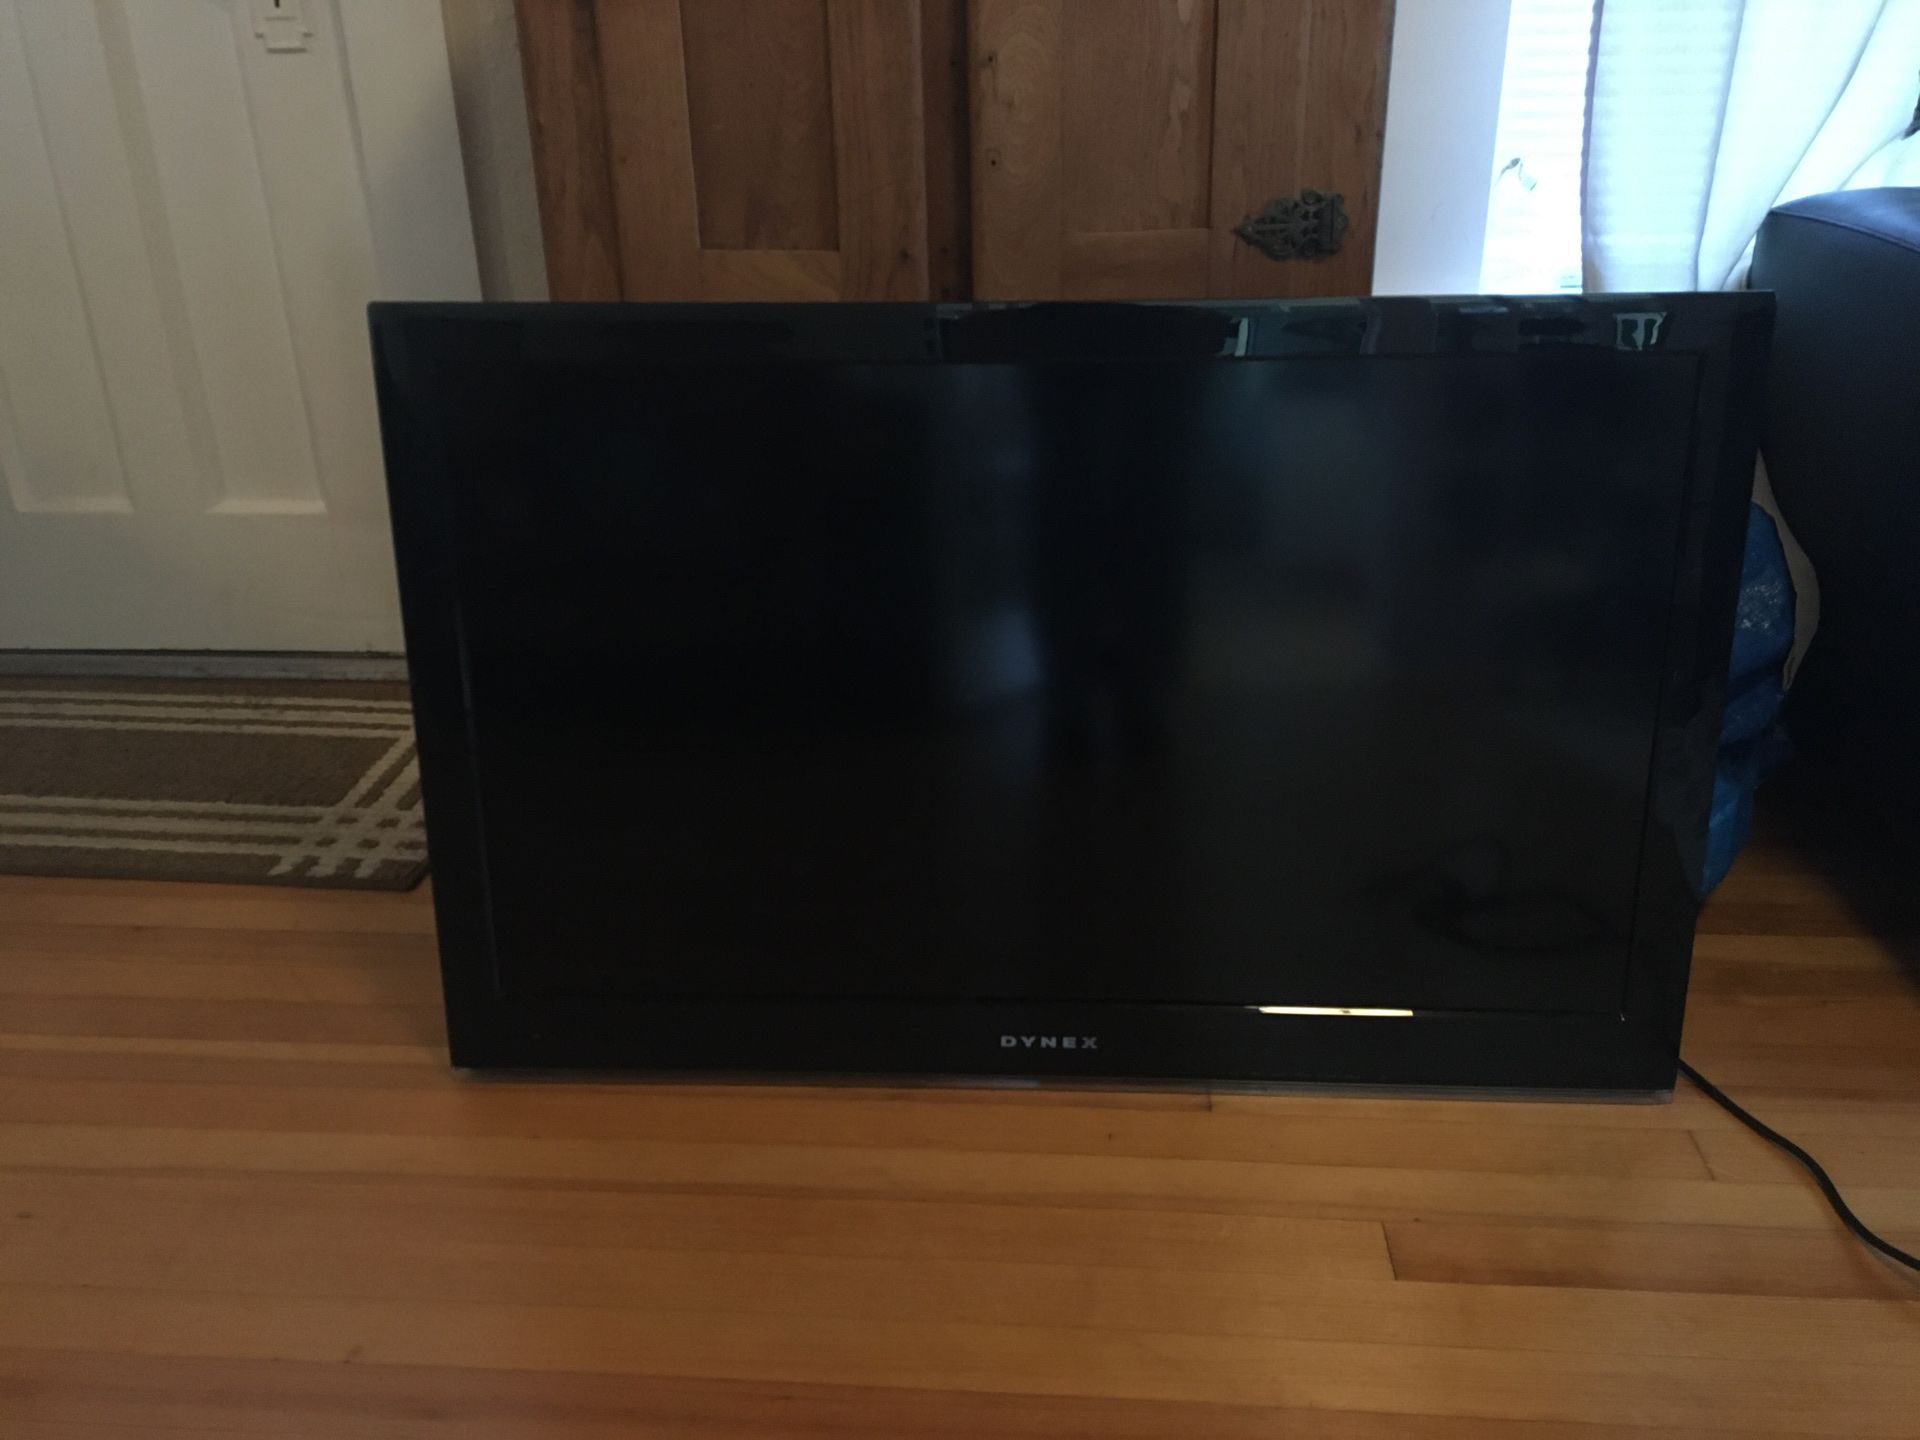 Dynex 42 inch television